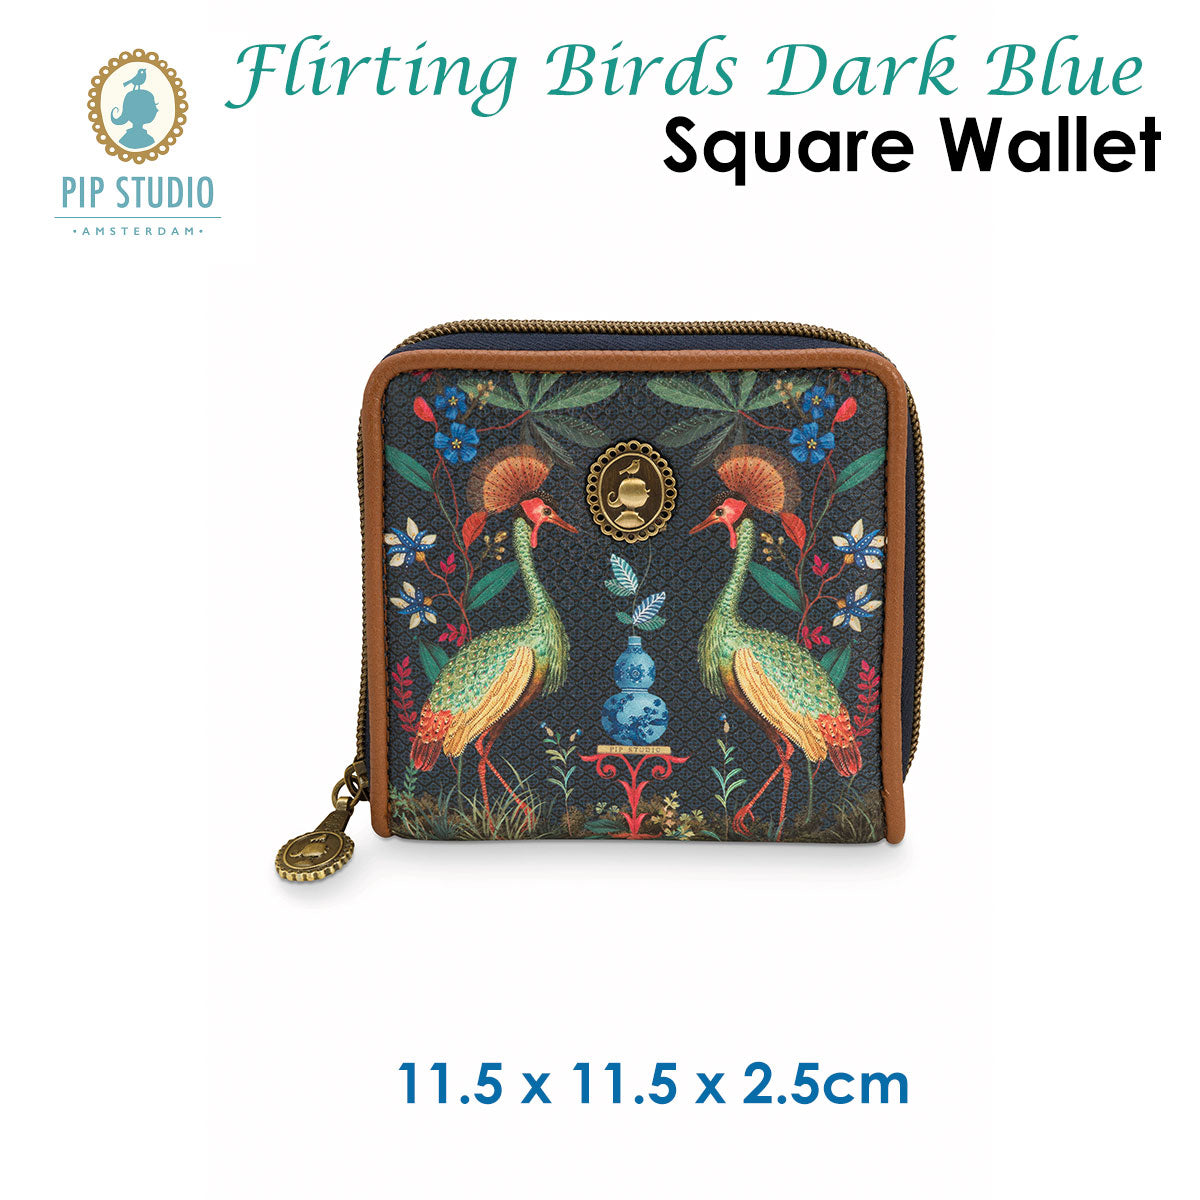 Flirting Birds Dark Blue Square Wallet